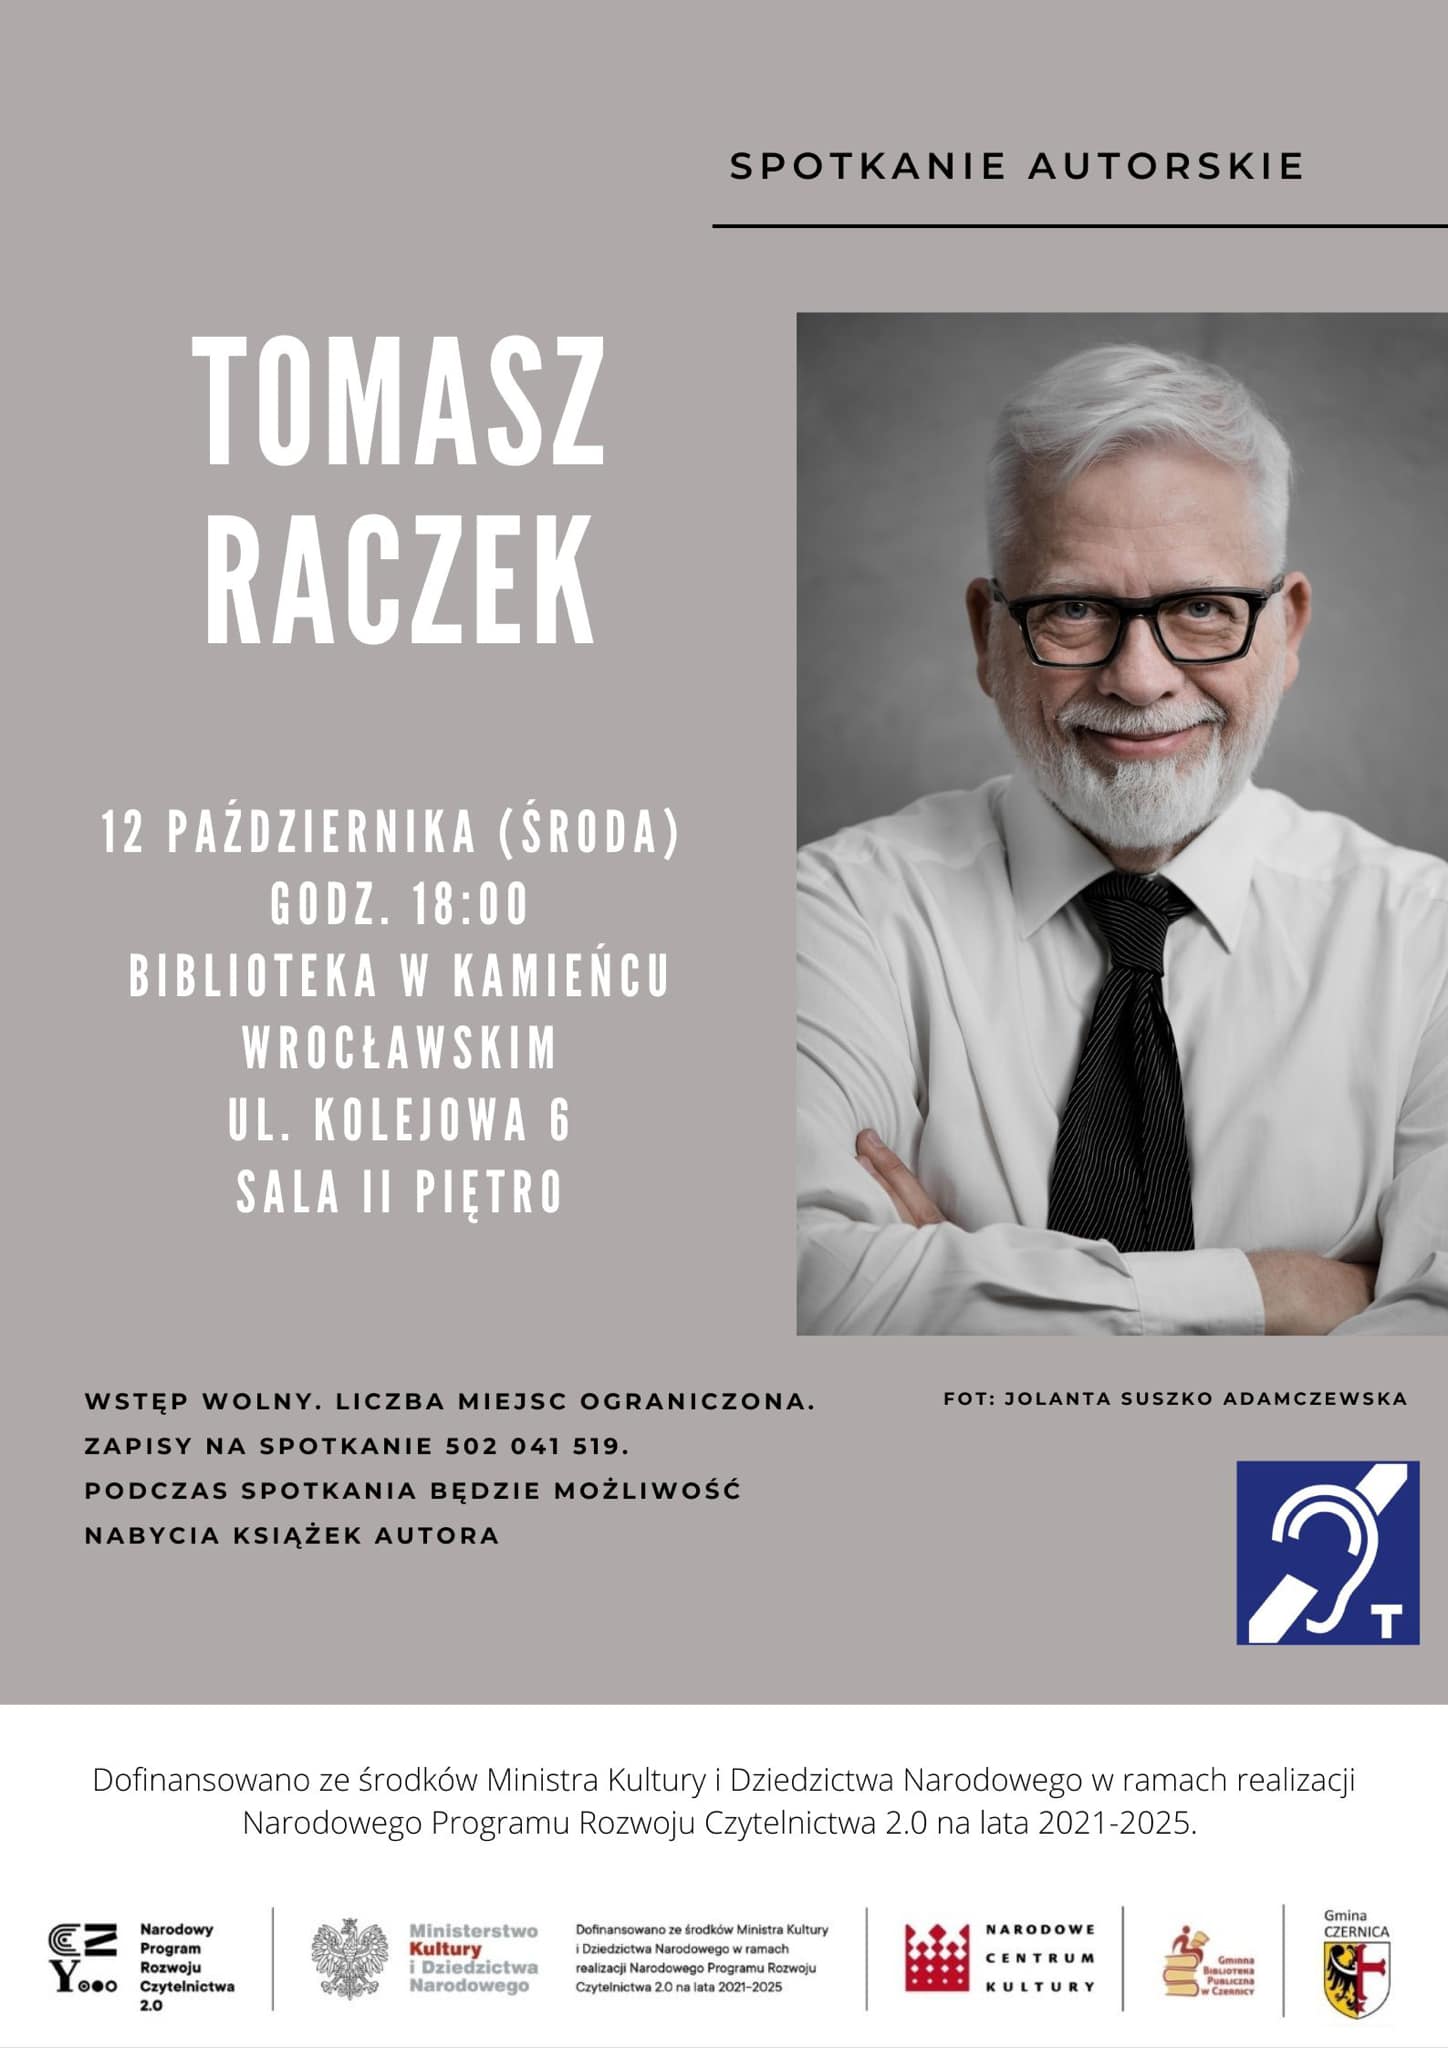 Spotkanie autorskie z Tomaszem Raczkiem